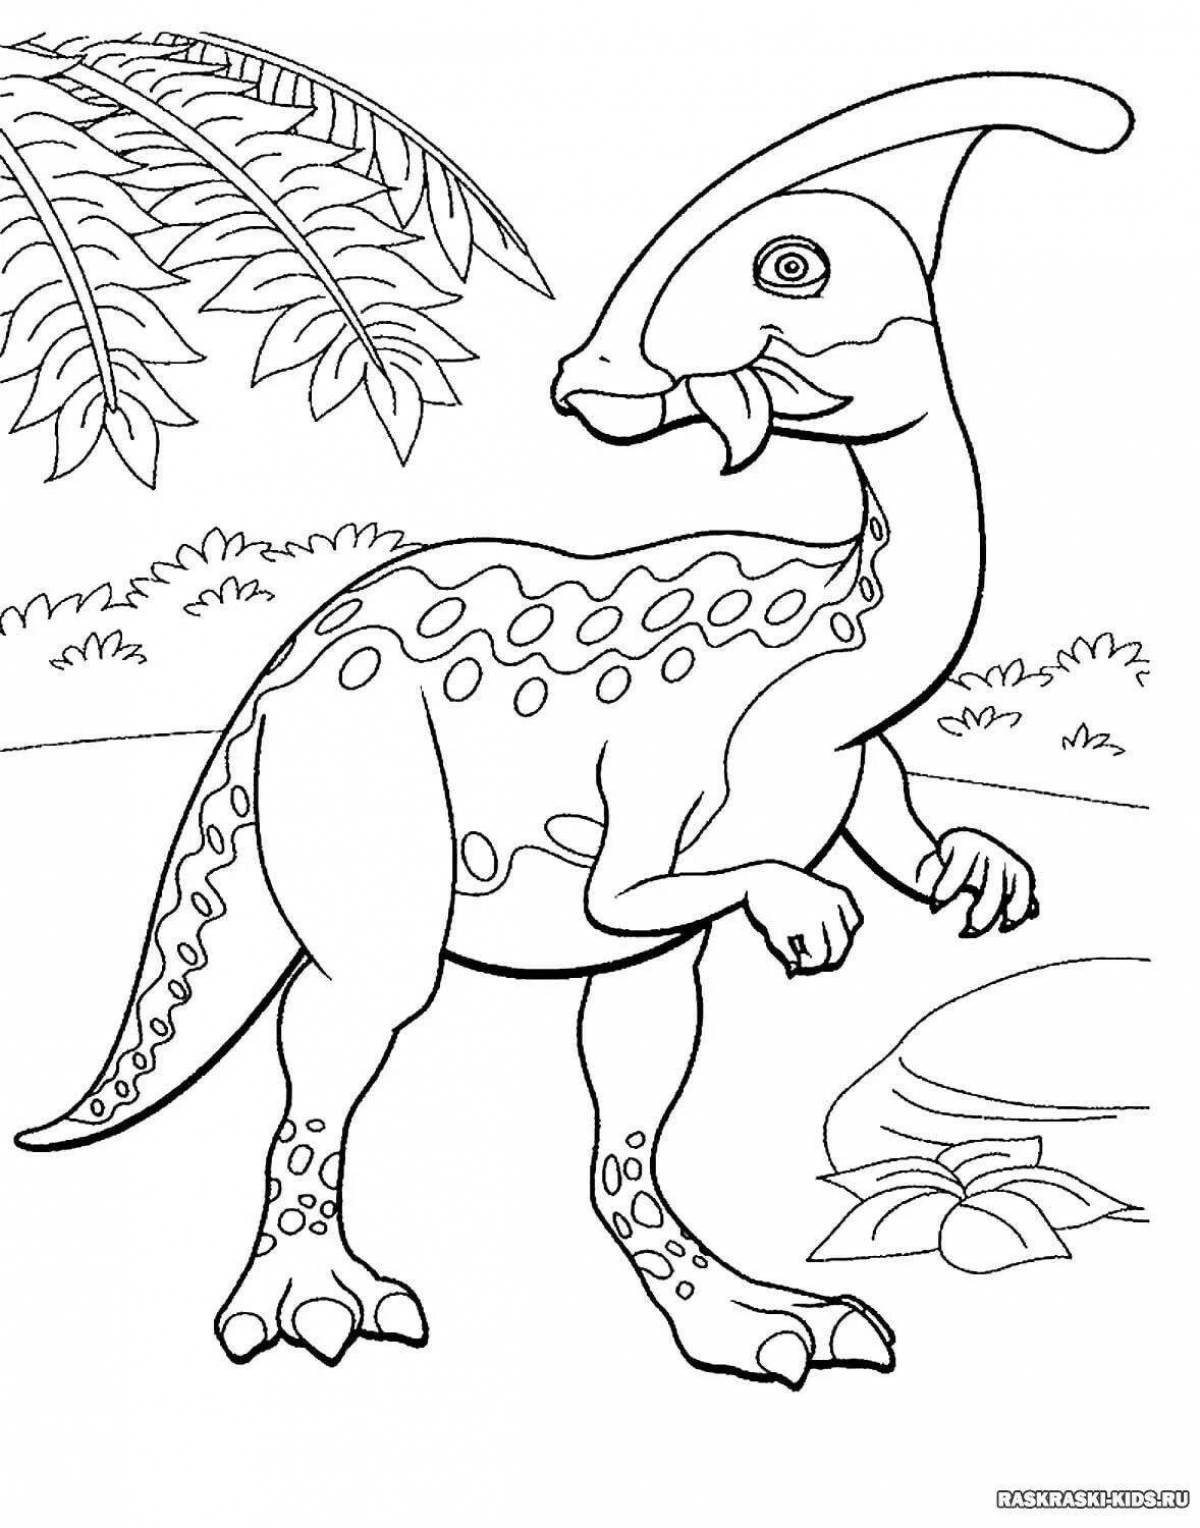 Великолепная раскраска динозавров